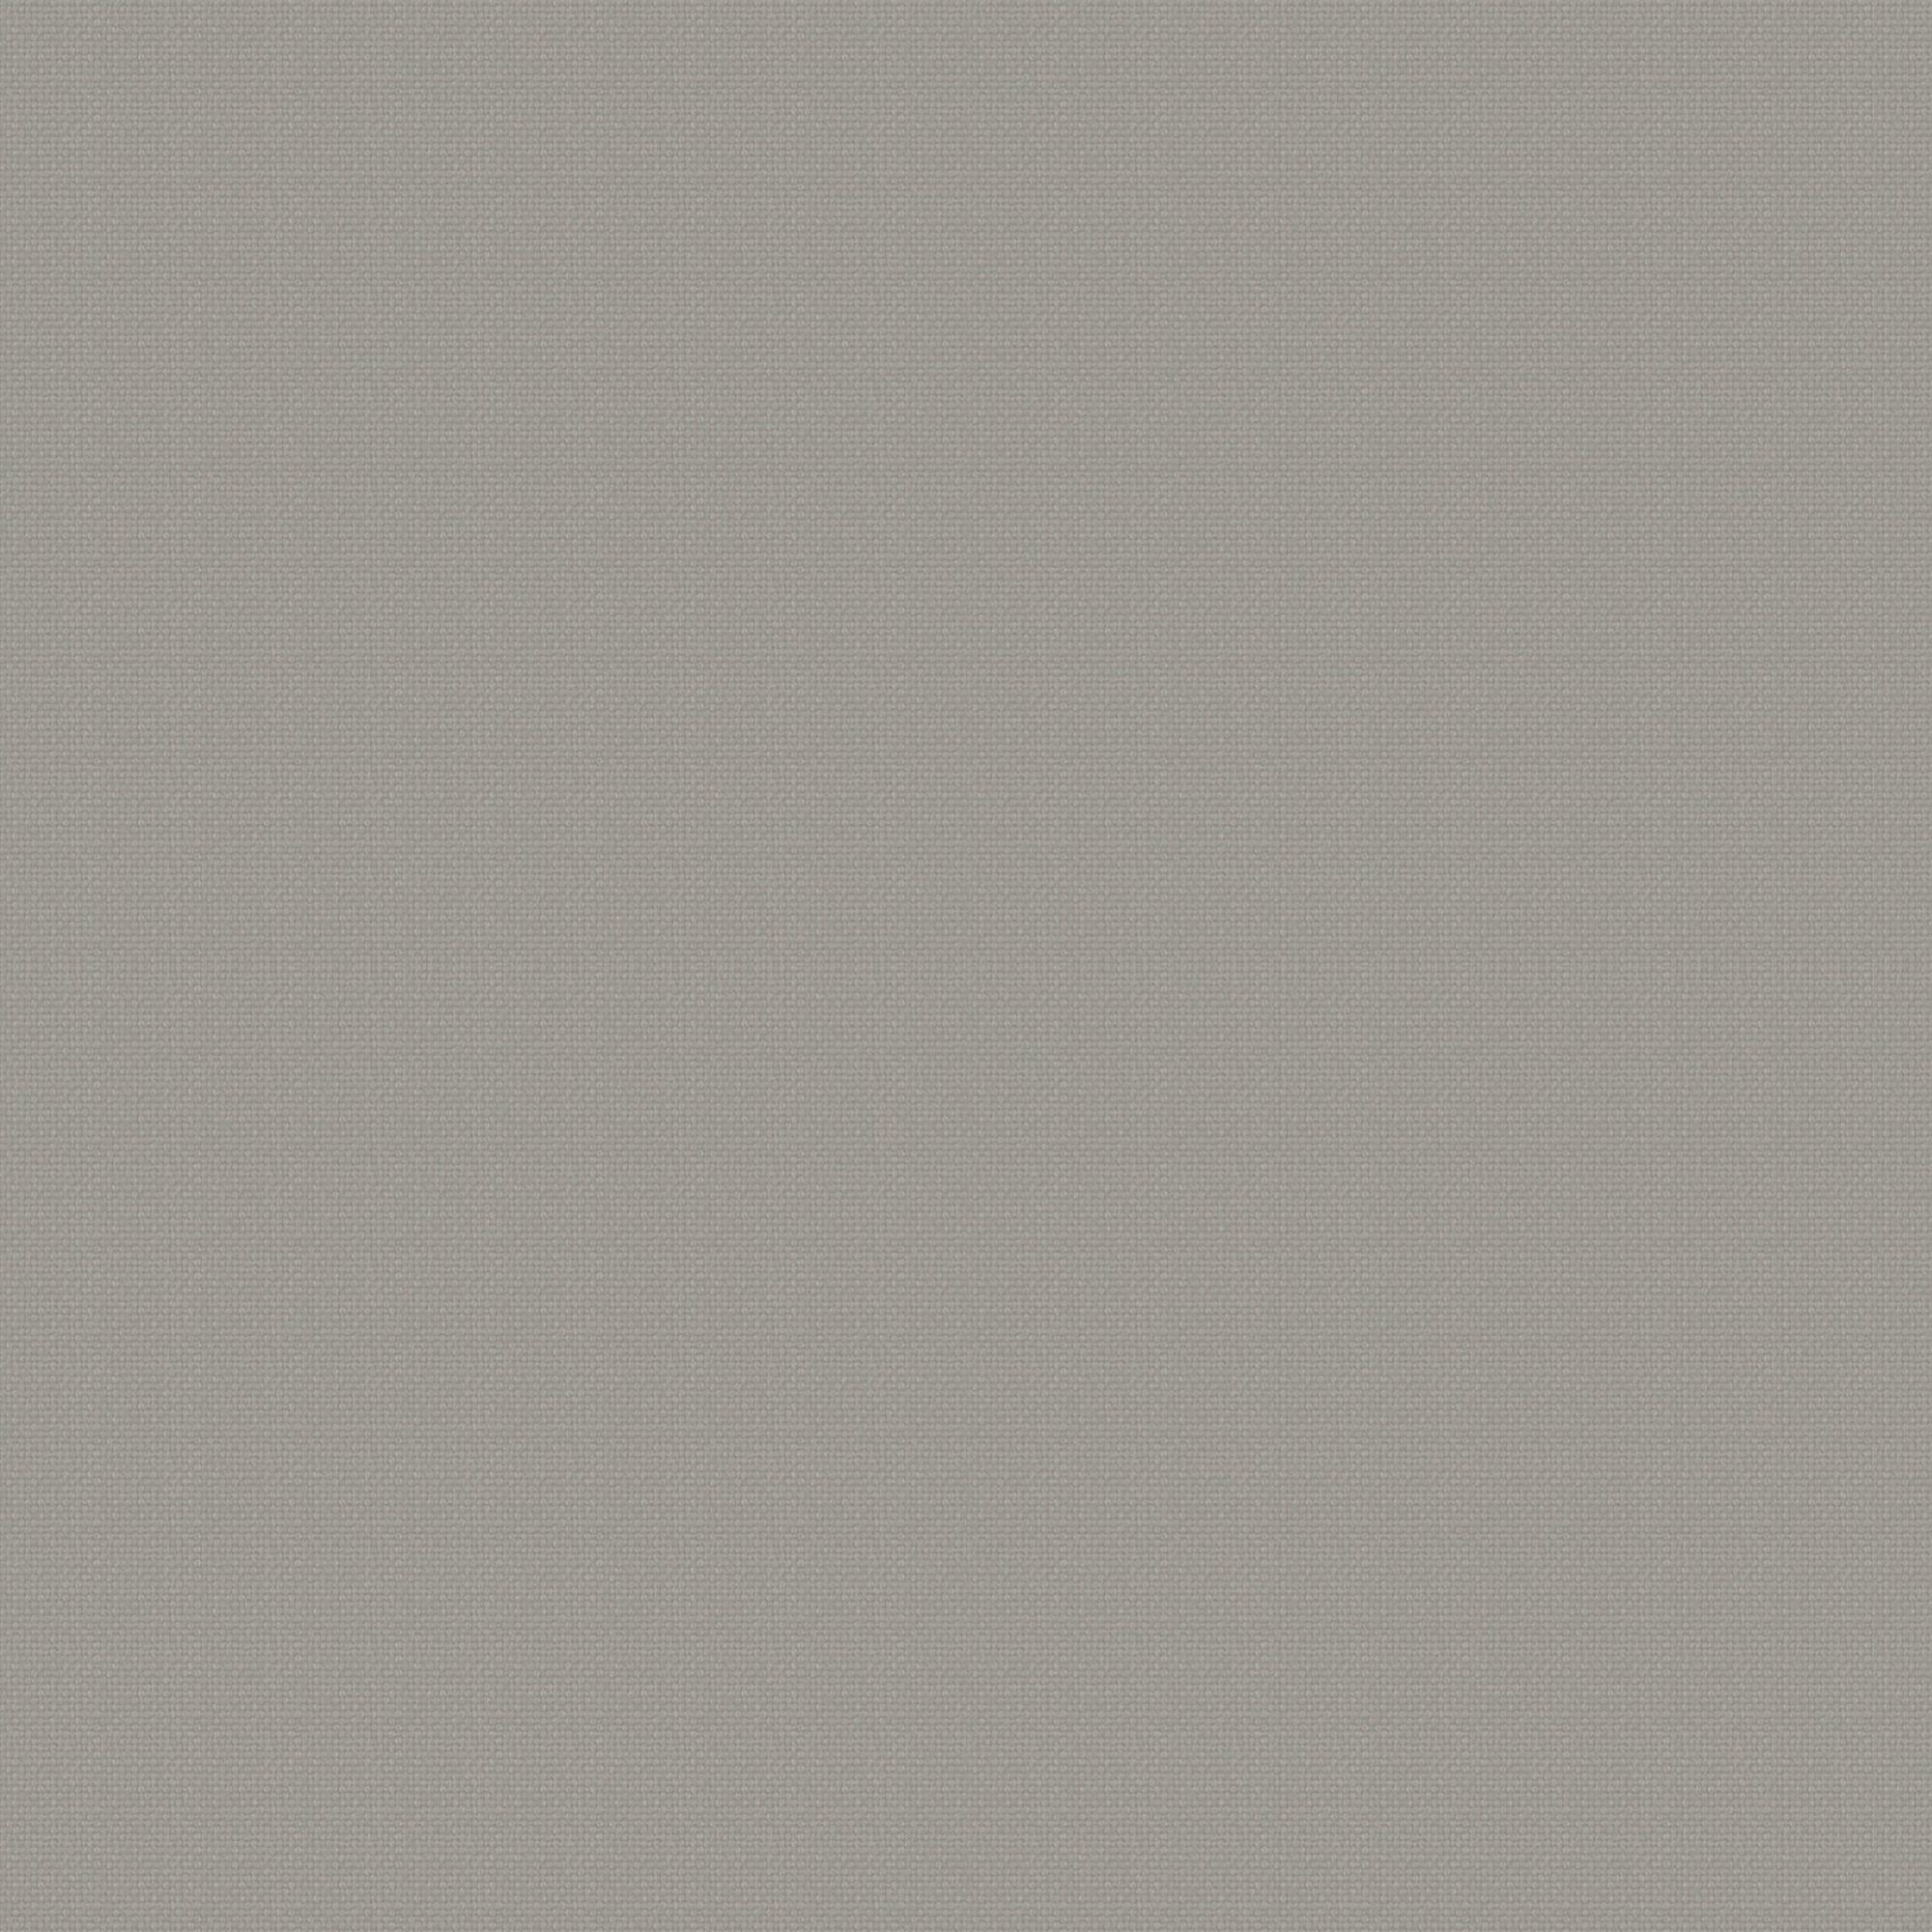 Tela al corte loneta mimos beig ancho 280 cm